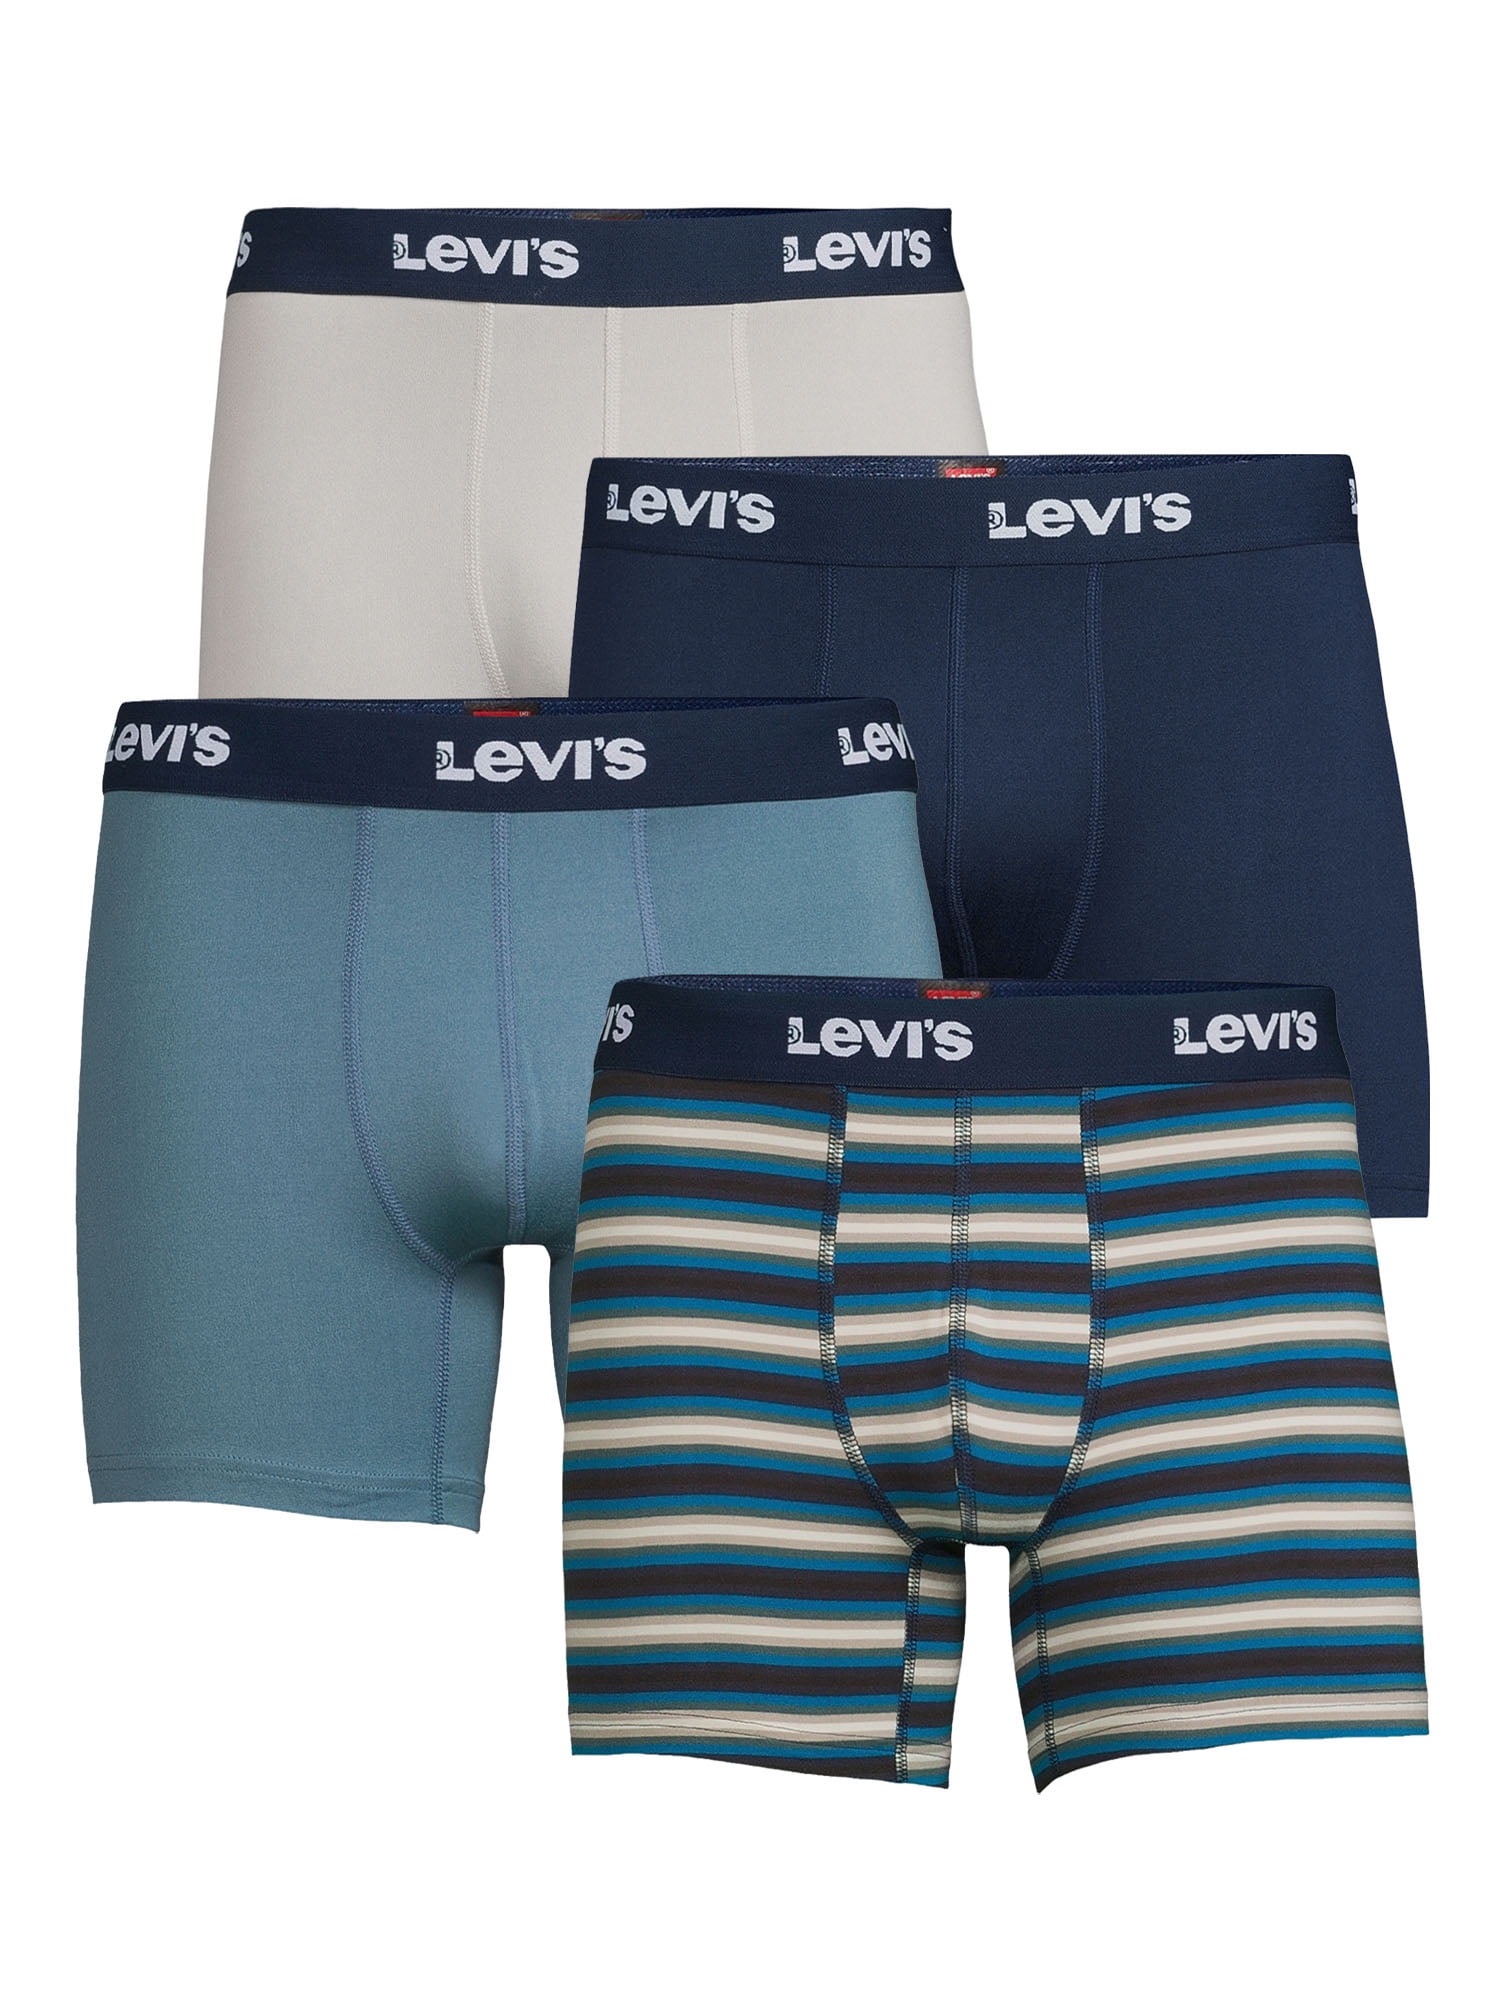 Levi's 4-Pack Adult Mens Microfiber Boxer Briefs, Sizes S-XL 